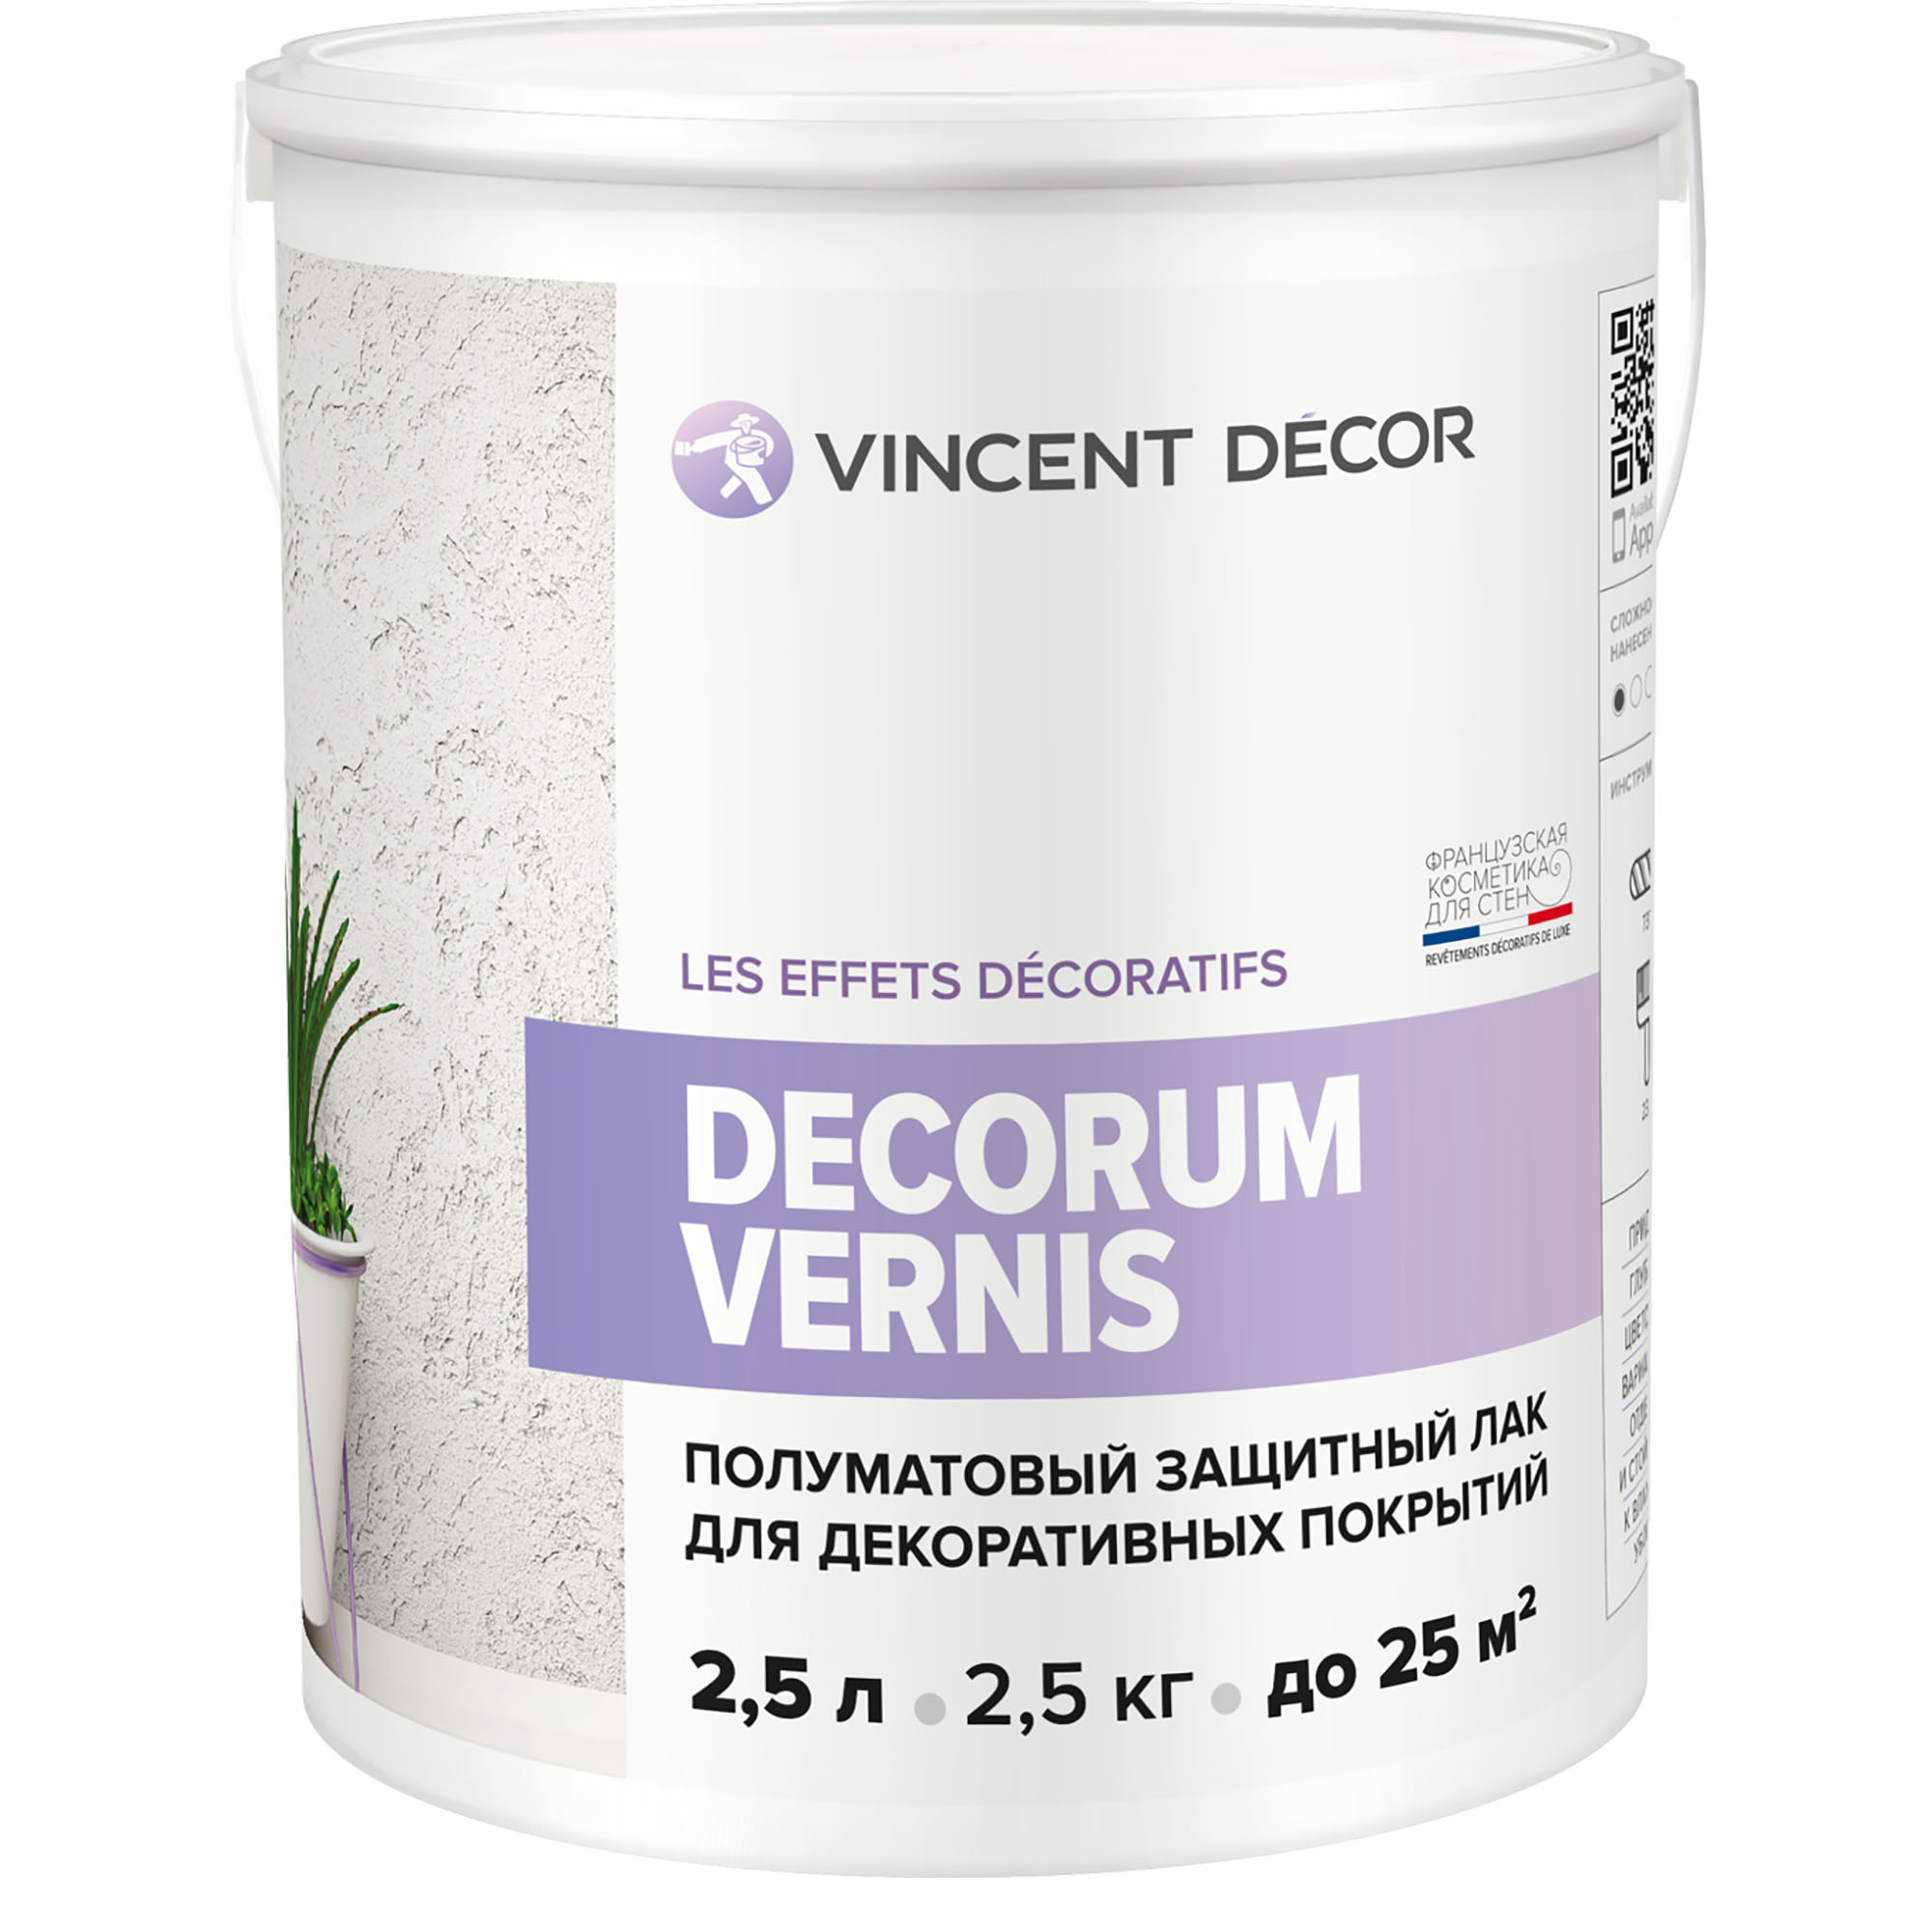 Лак защитный для декоративных покрытий Vincent Decor Decorum Vernis полуматовый 2,5 л грунтовка для декоративных покрытий vincent decor sous couсhe 2 5 л